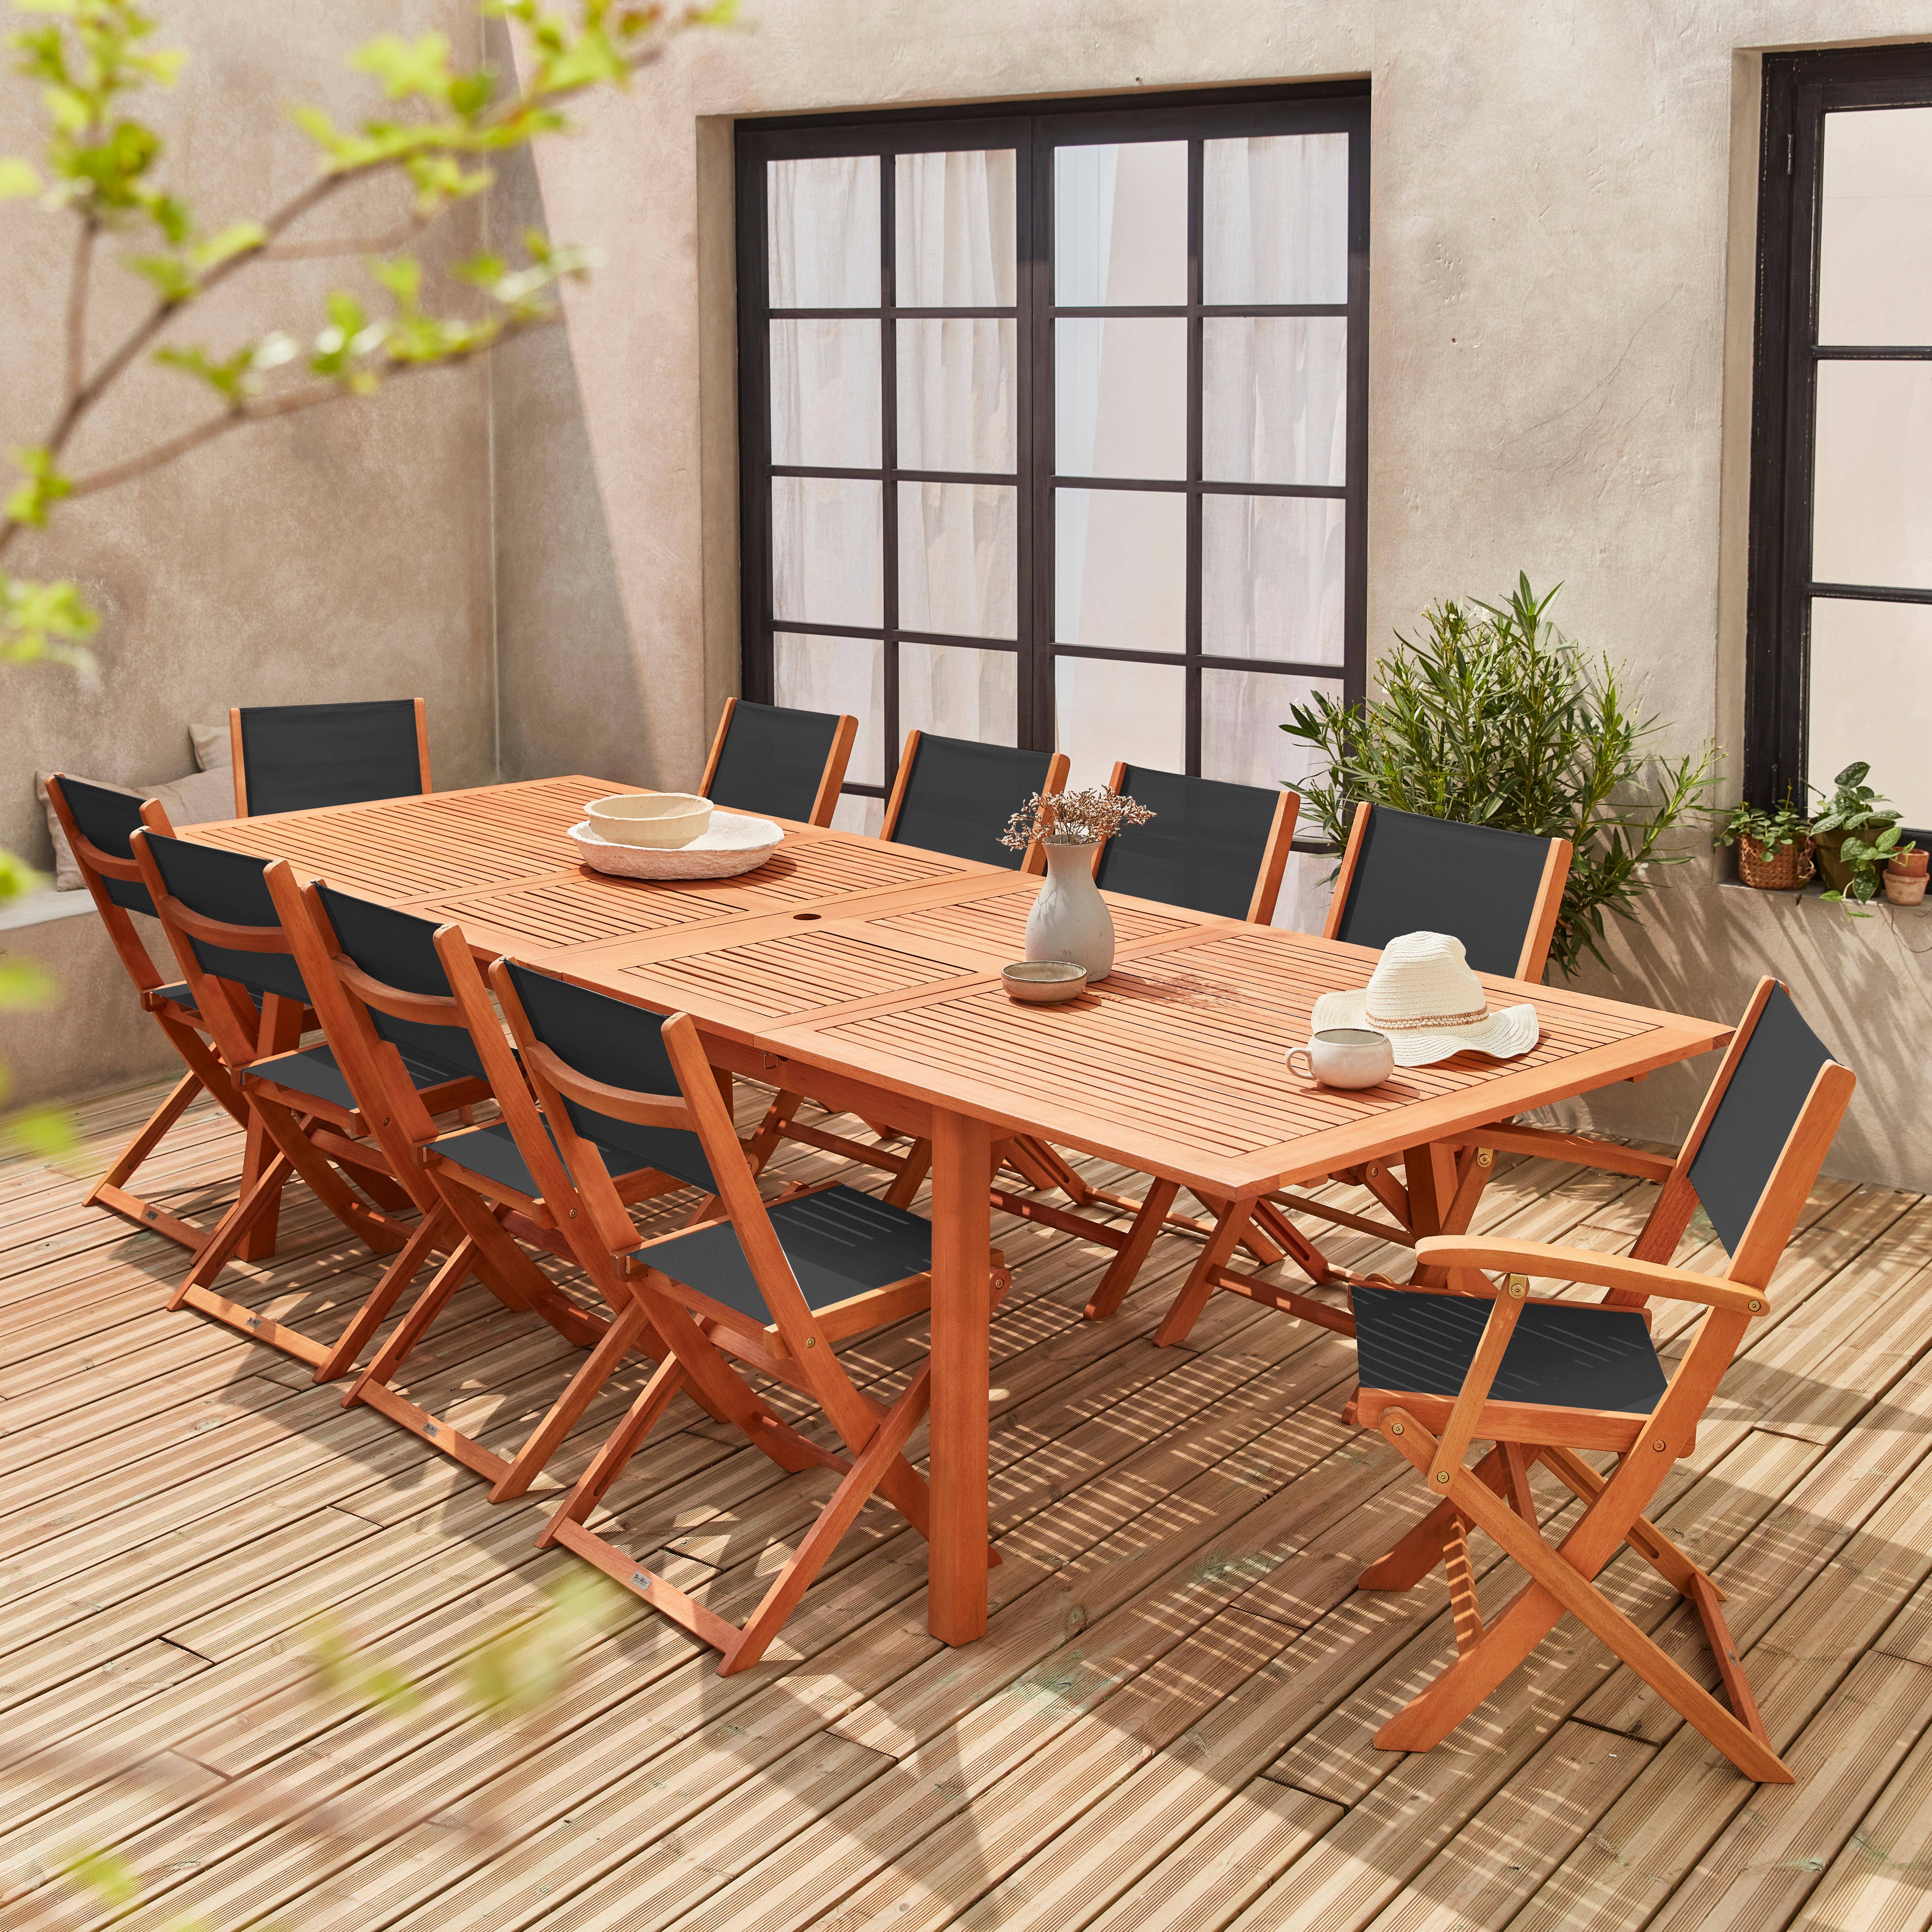 Ausziehbares Gartenmöbelset aus Holz - Almeria Tisch 200/250/300cm mit 2 Verlängerungsplatten, 2 Sesseln und 8 Stühlen, aus geöltem FSC Eukalyptusholz und schwarzem  Textilene Photo1